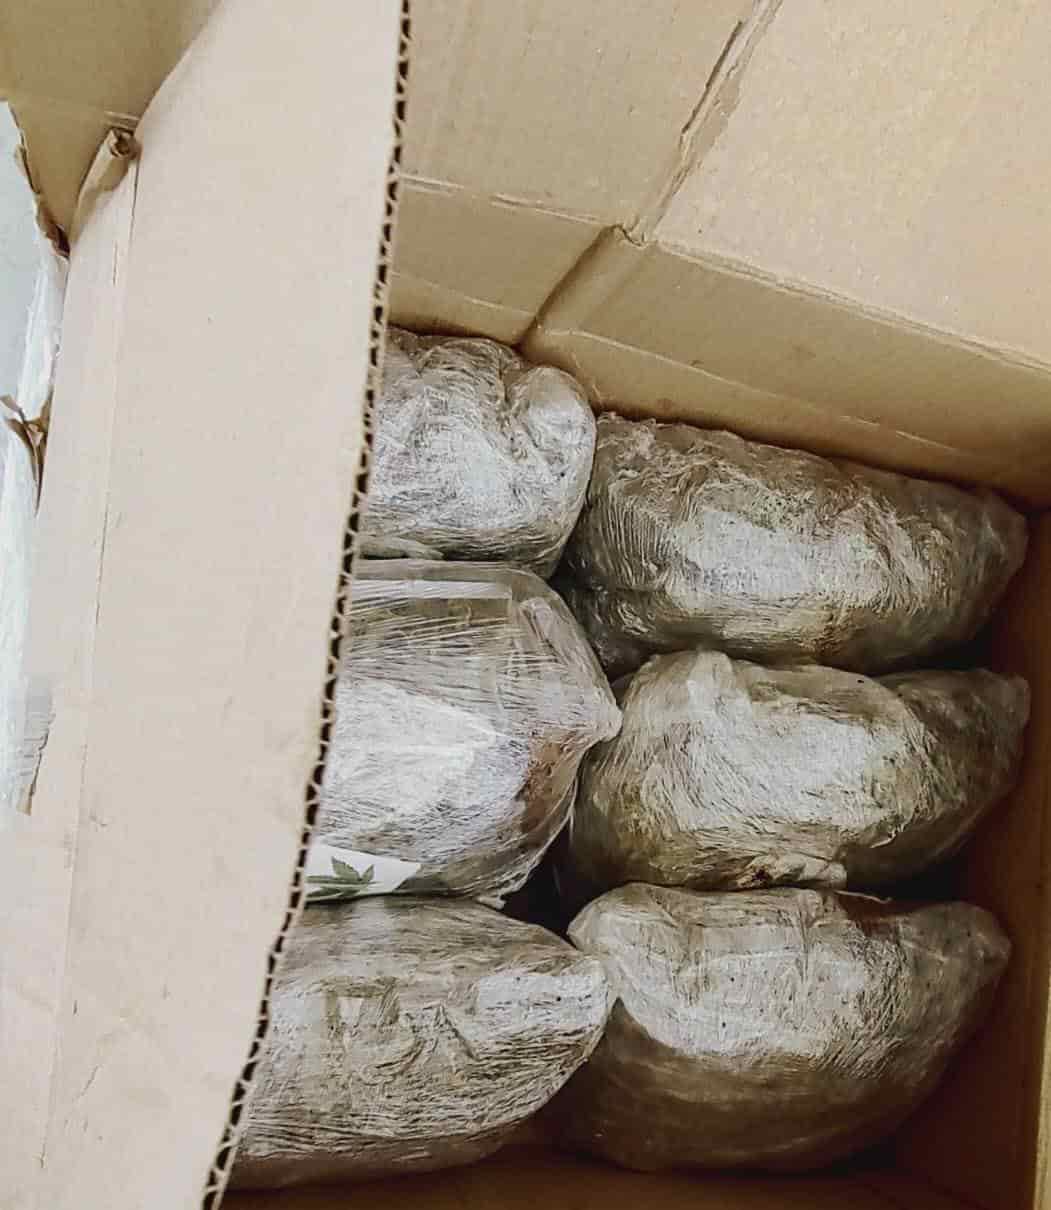 Elementos de la Guardia Nacional, lograron el decomiso de 16 paquetes de droga que venían ocultos entre cajas de cartón, que simulaban contener frascos vacíos